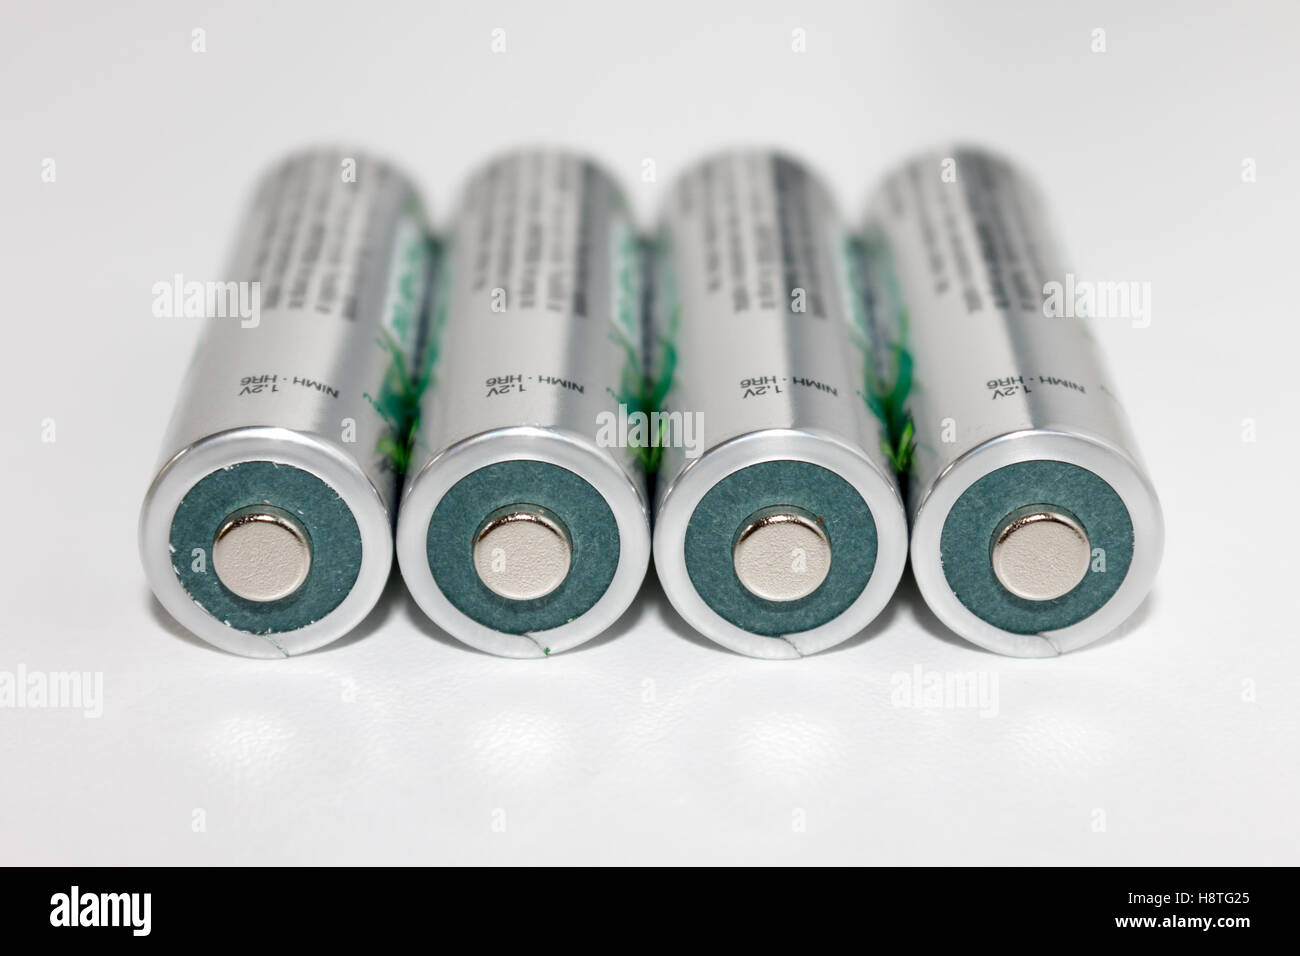 Wiederaufladbare Nickel-Metallhydrid (NiMH) Batterie-Zellen ist notwendig, um angetriebene heutigen hohen abtropfen elektronische Geräte. Stockfoto